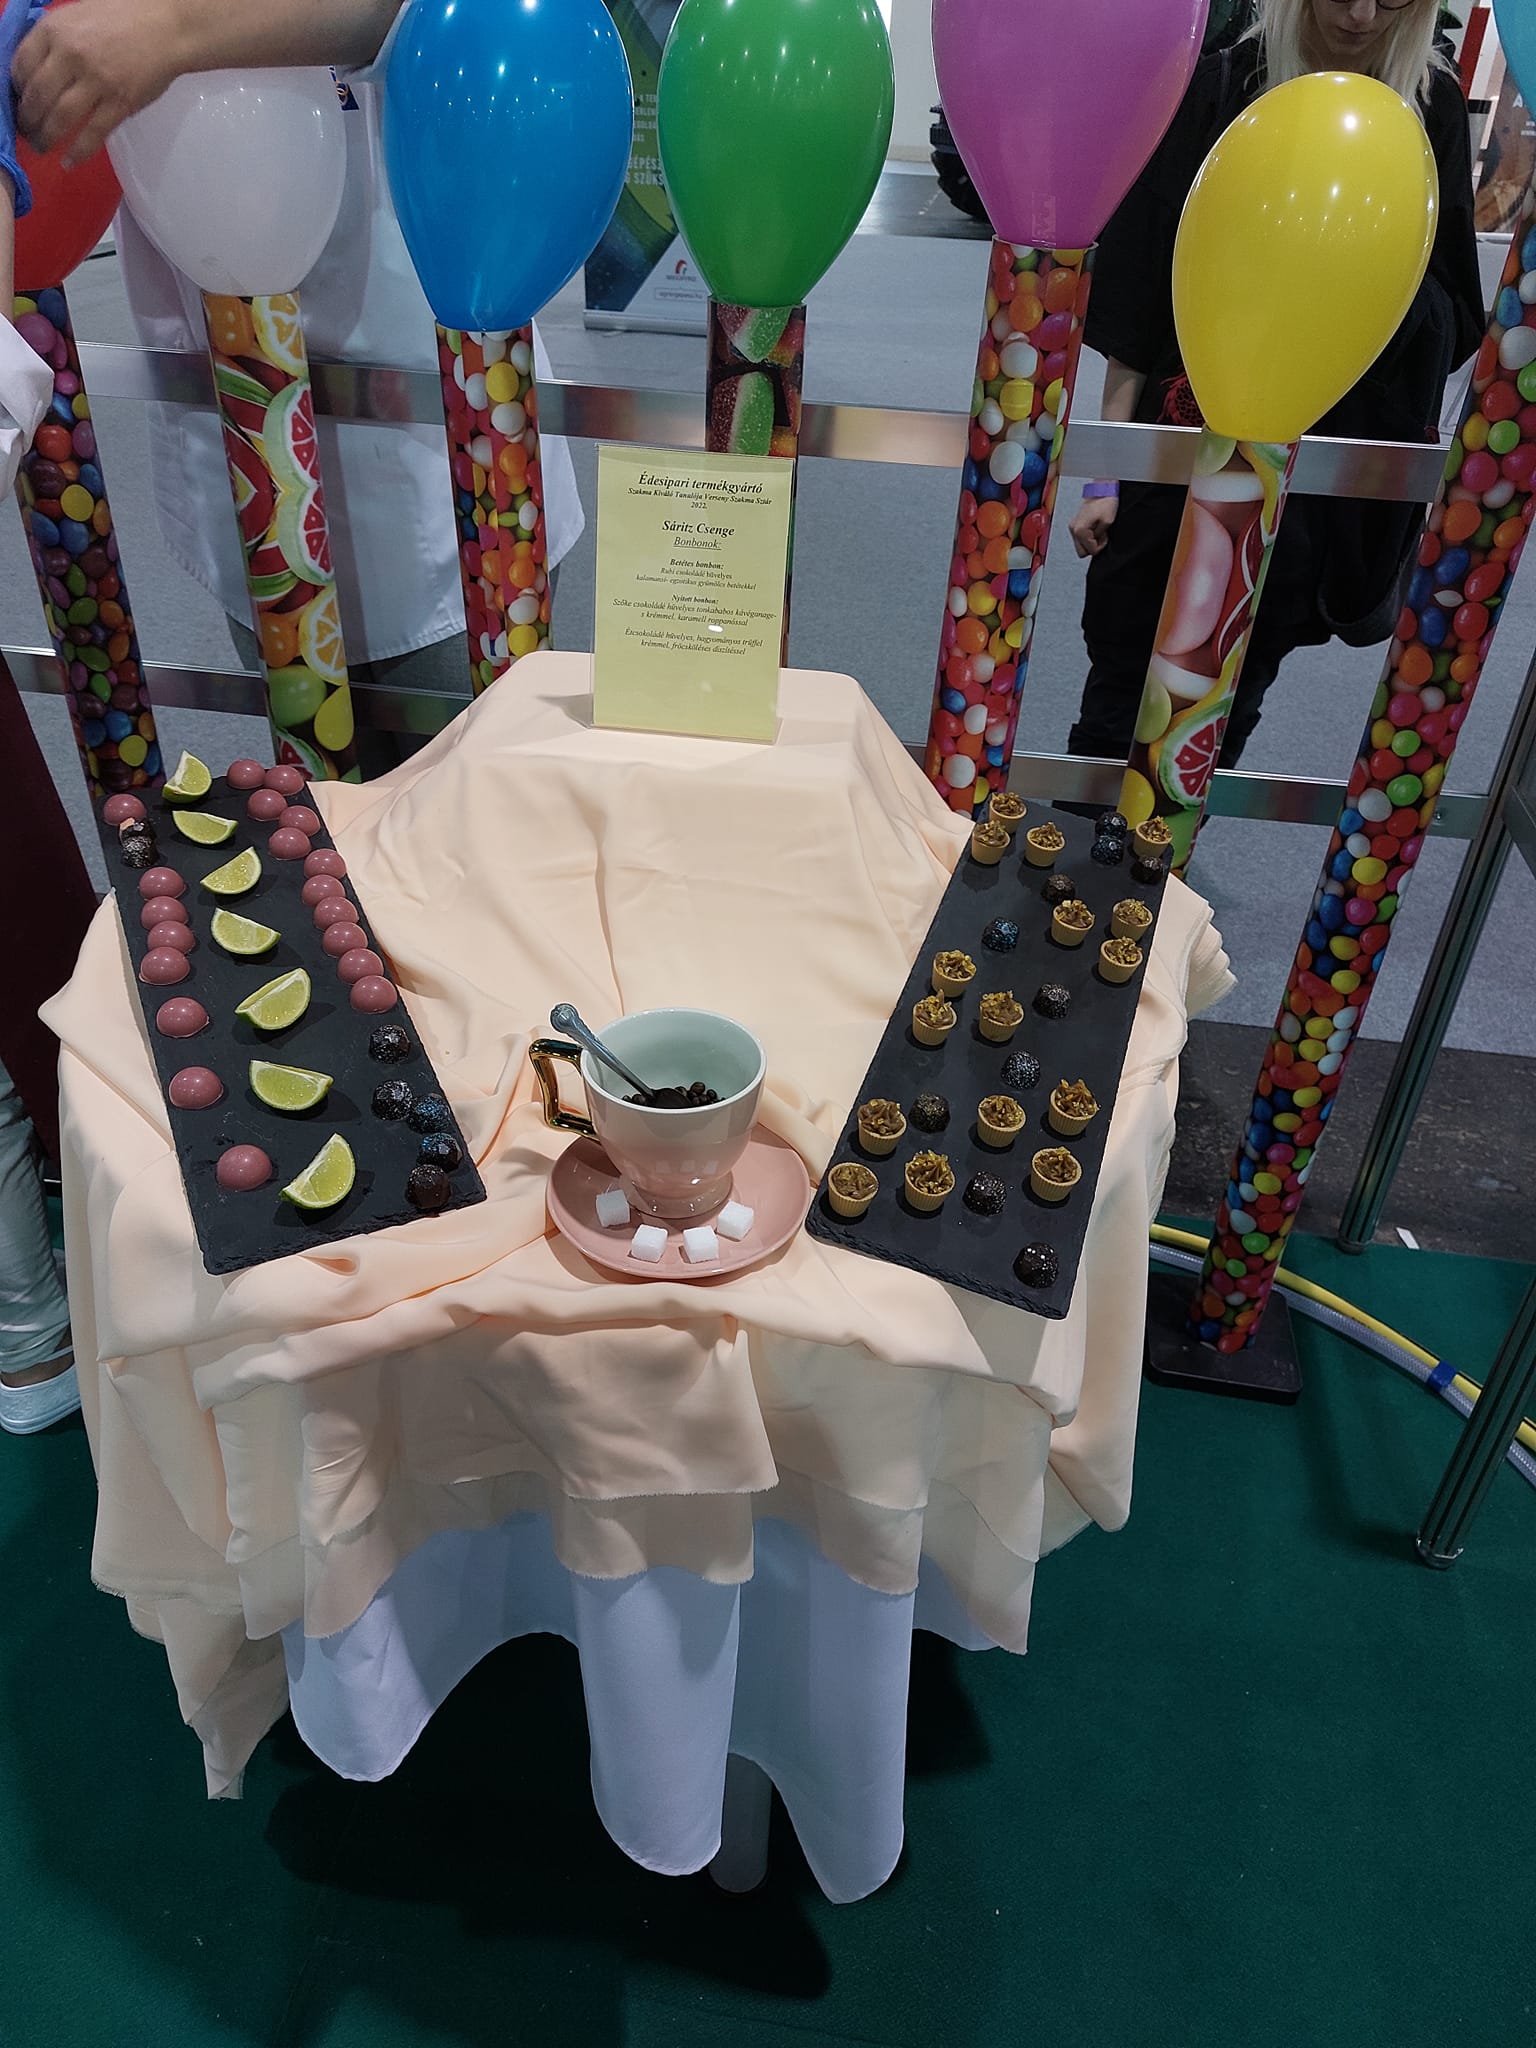 Különféle csokoládékat bemutató kijelző egy elegánsan terített asztalon teáscsészével és tányérokkal, színes cukorkákkal teli oszlopokkal és vibráló léggömbökkel körülvéve.